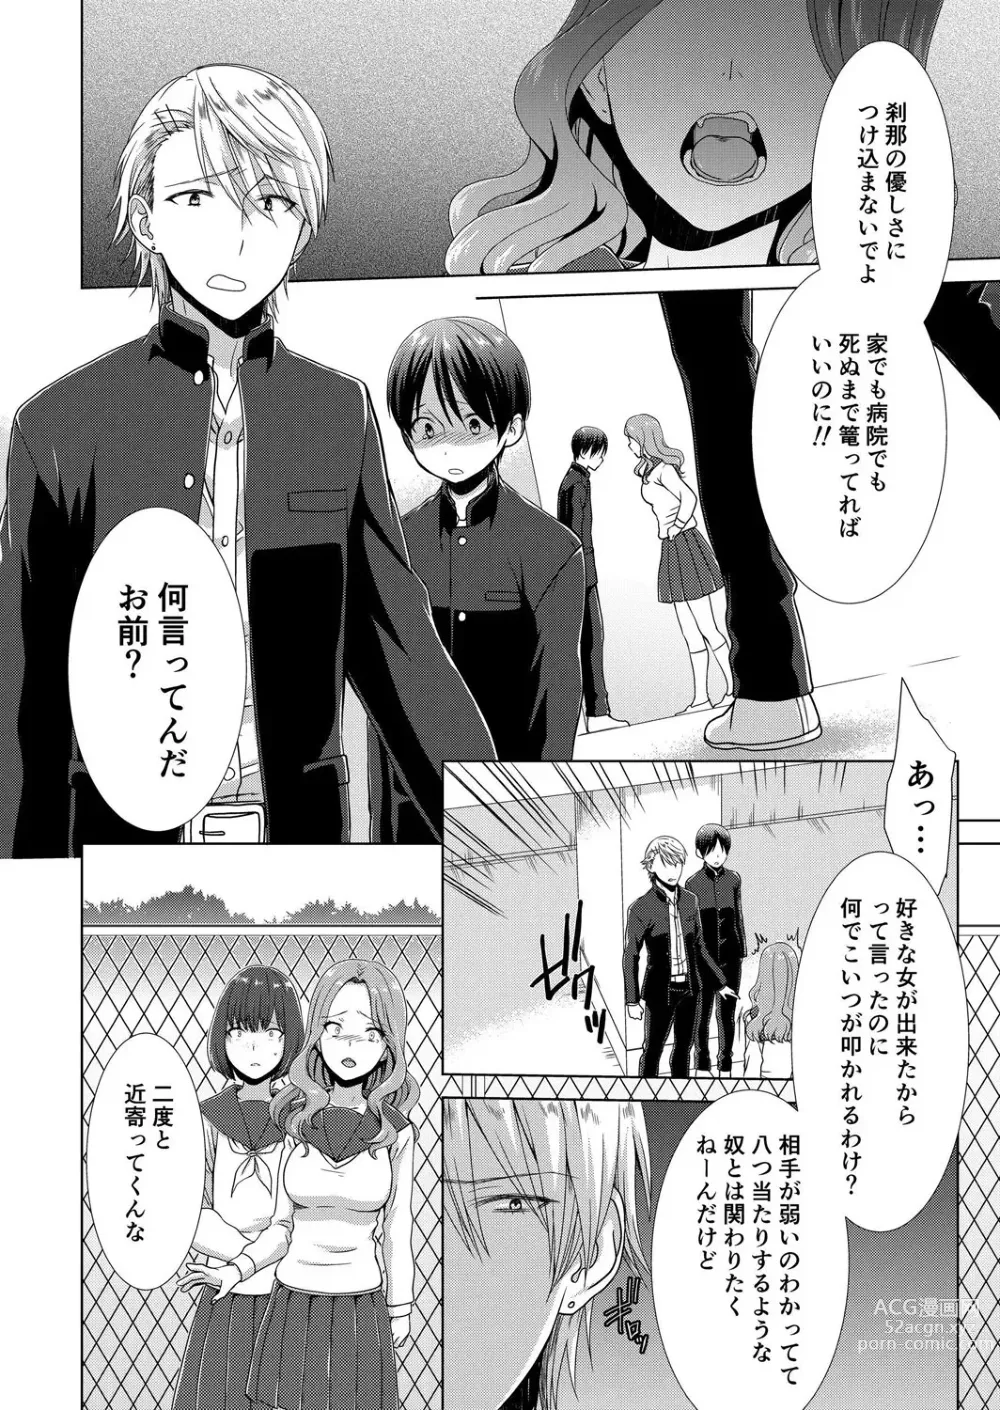 Page 7 of manga Kyou kara Onnanoko!? Mitaiken no Kairaku Icchau Karada Vol. 3